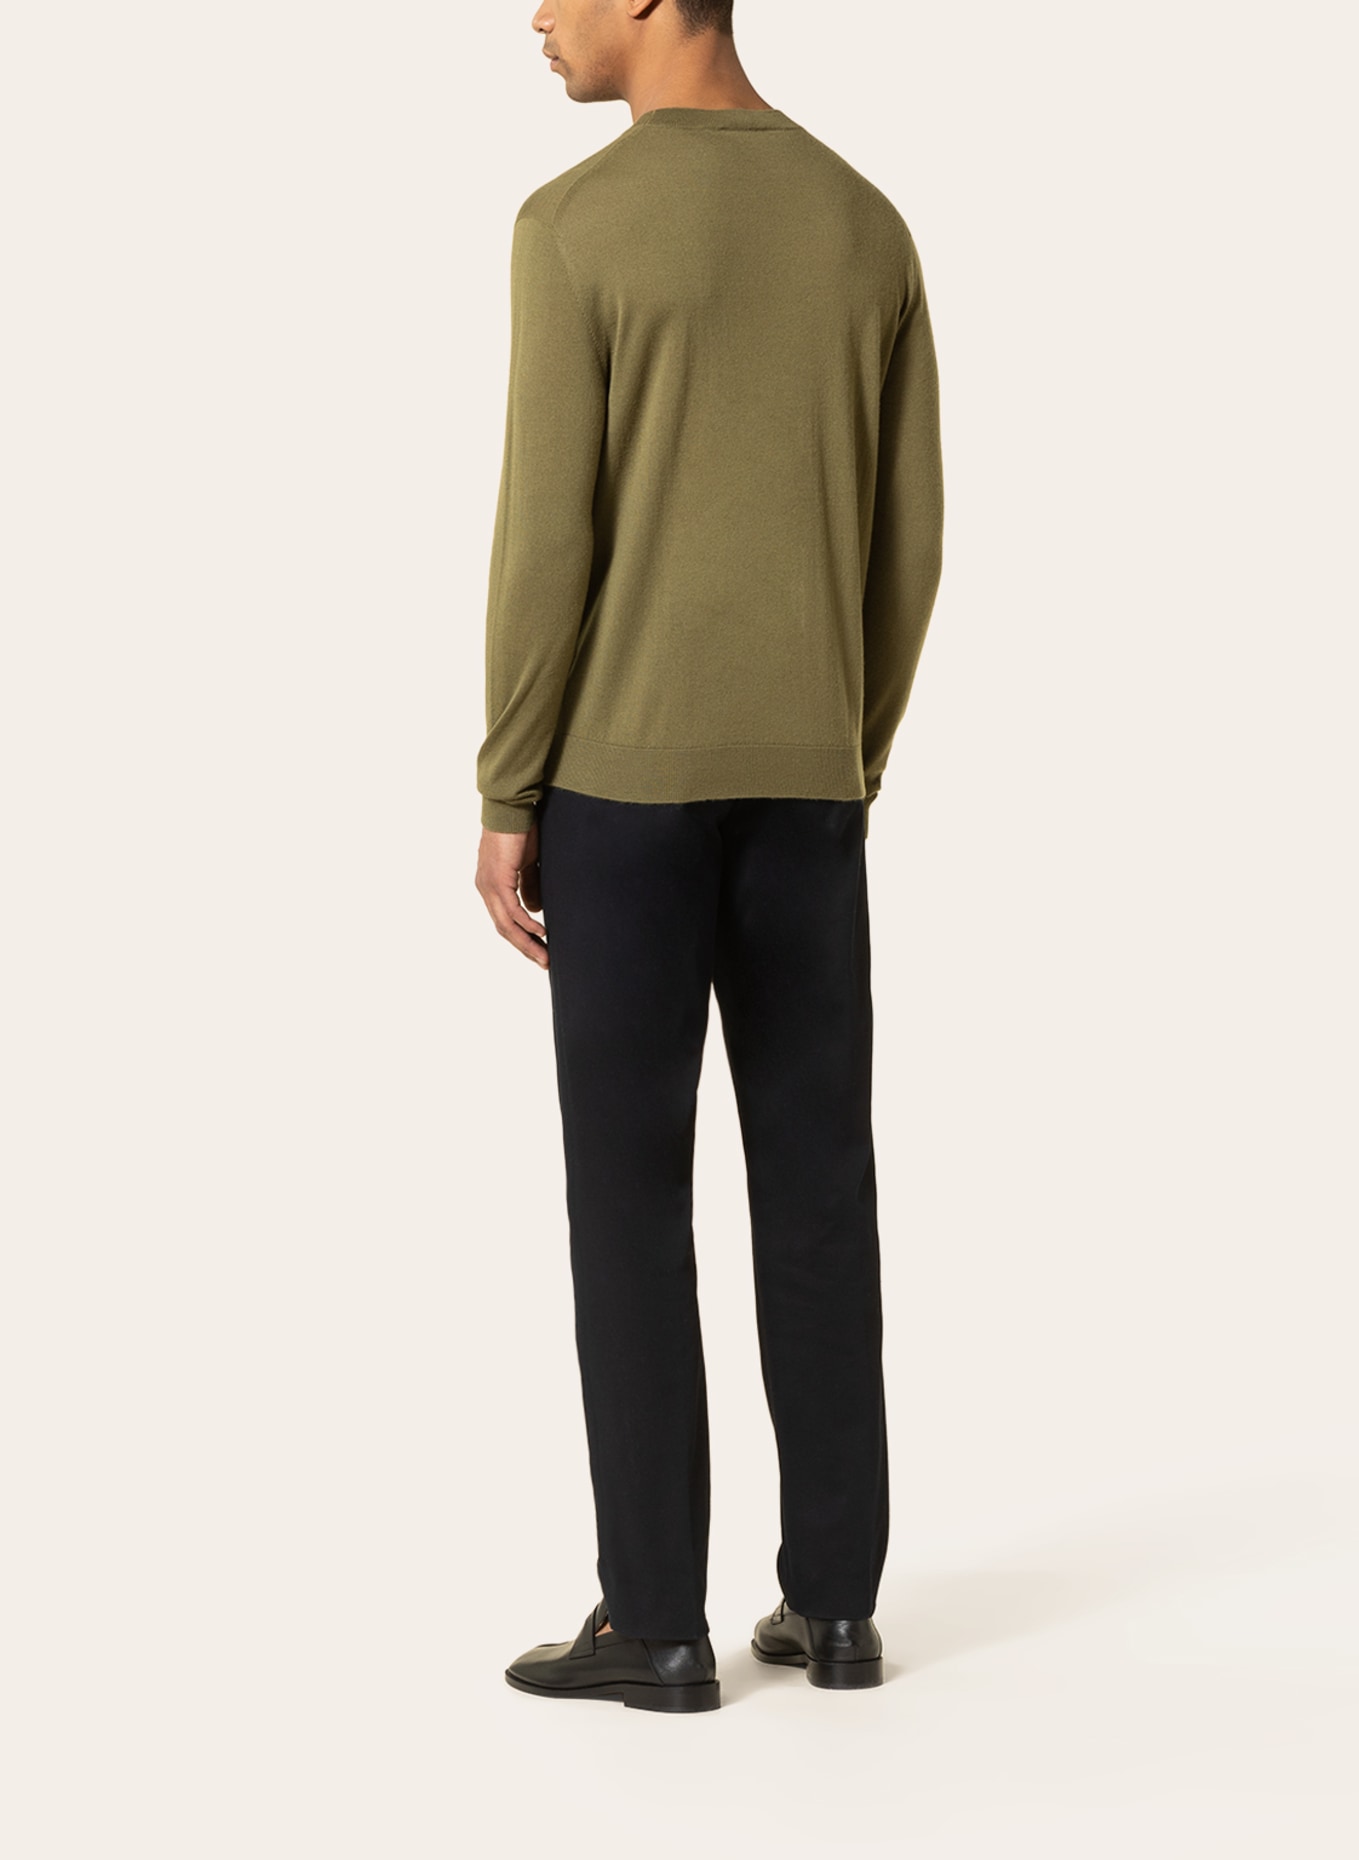 IRIS von ARNIM Cashmere sweater, Color: GREEN (Image 3)